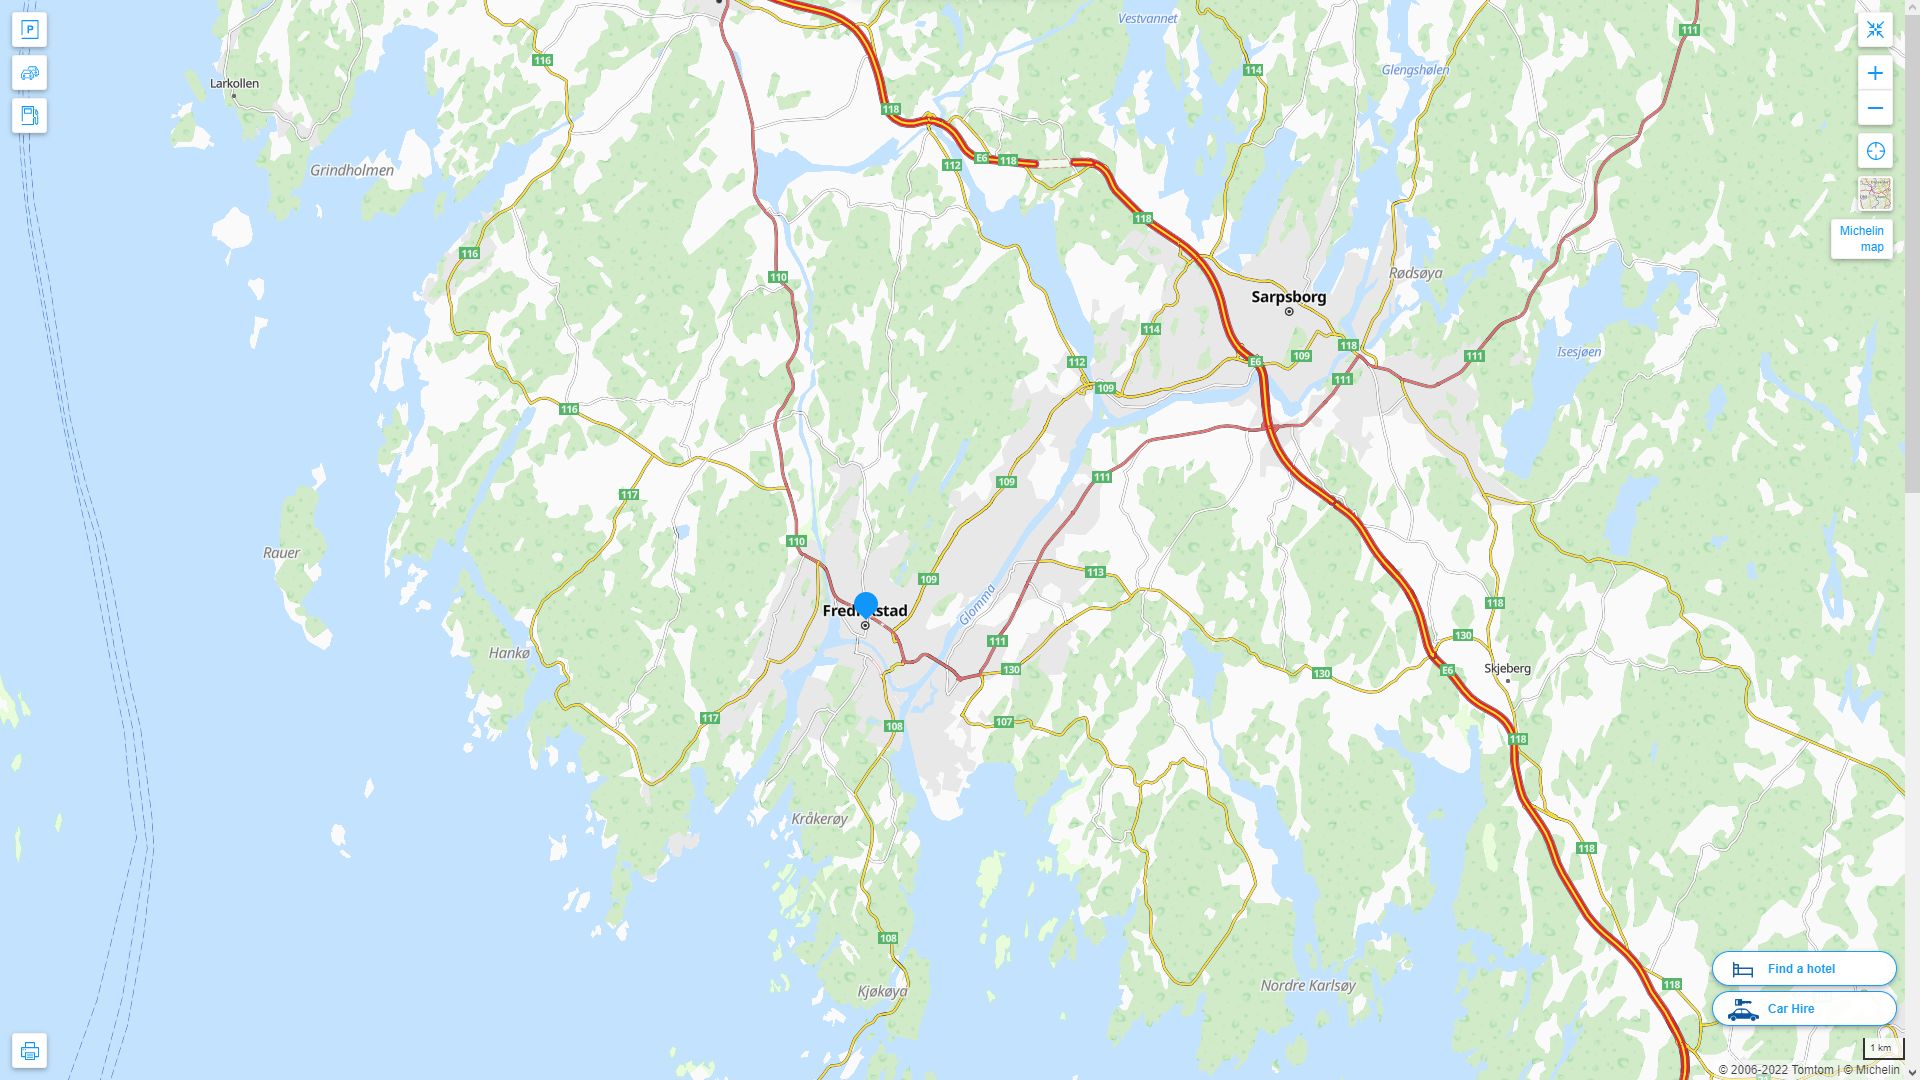 Fredrikstad Norvege Autoroute et carte routiere